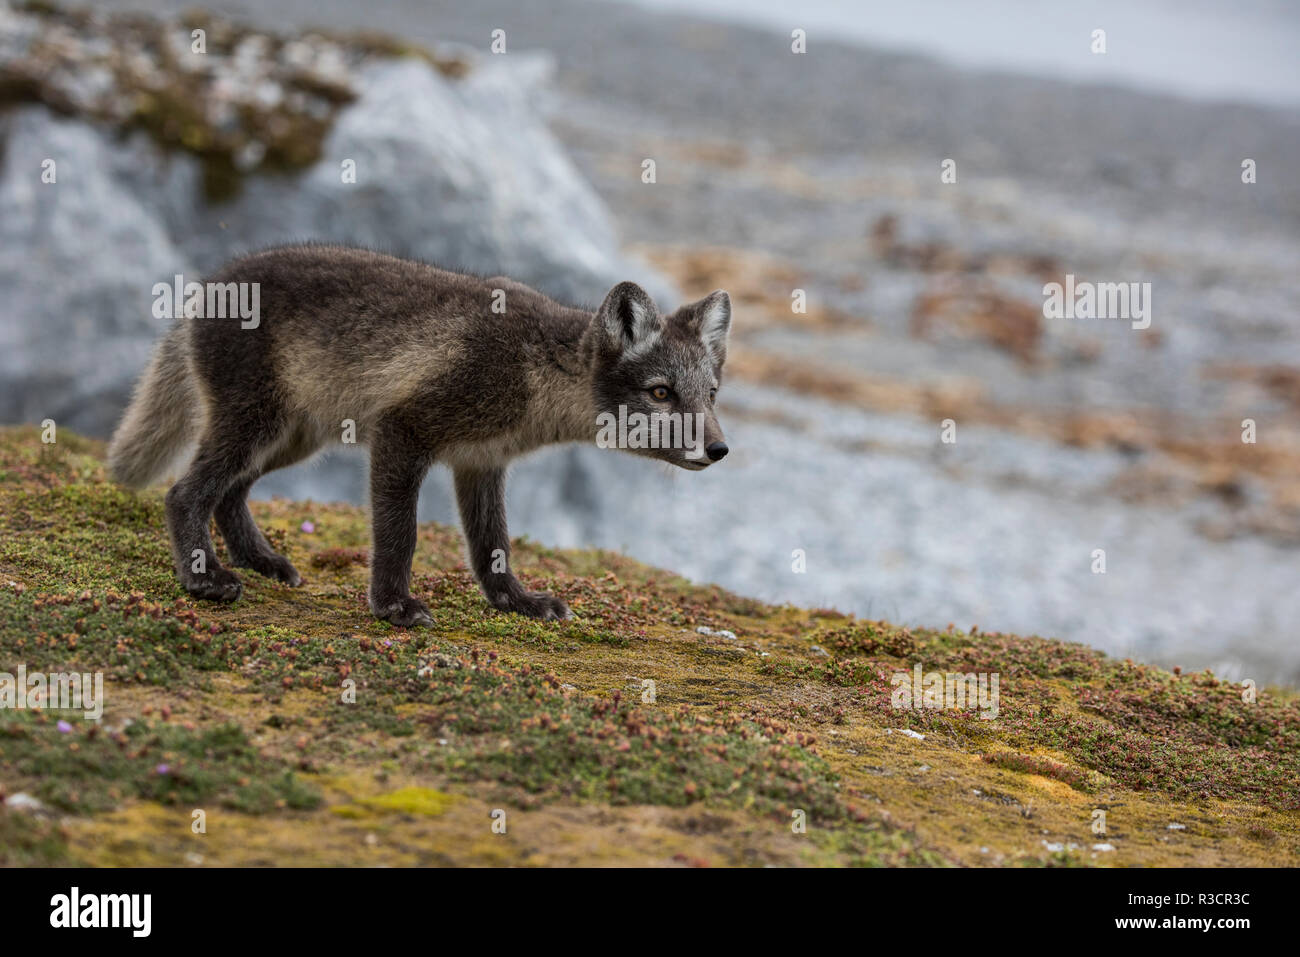 Norway, Svalbard, Spitsbergen. Hornsund, Gnalodden, arctic fox (Vulpes lagapus) with summer coat. Stock Photo